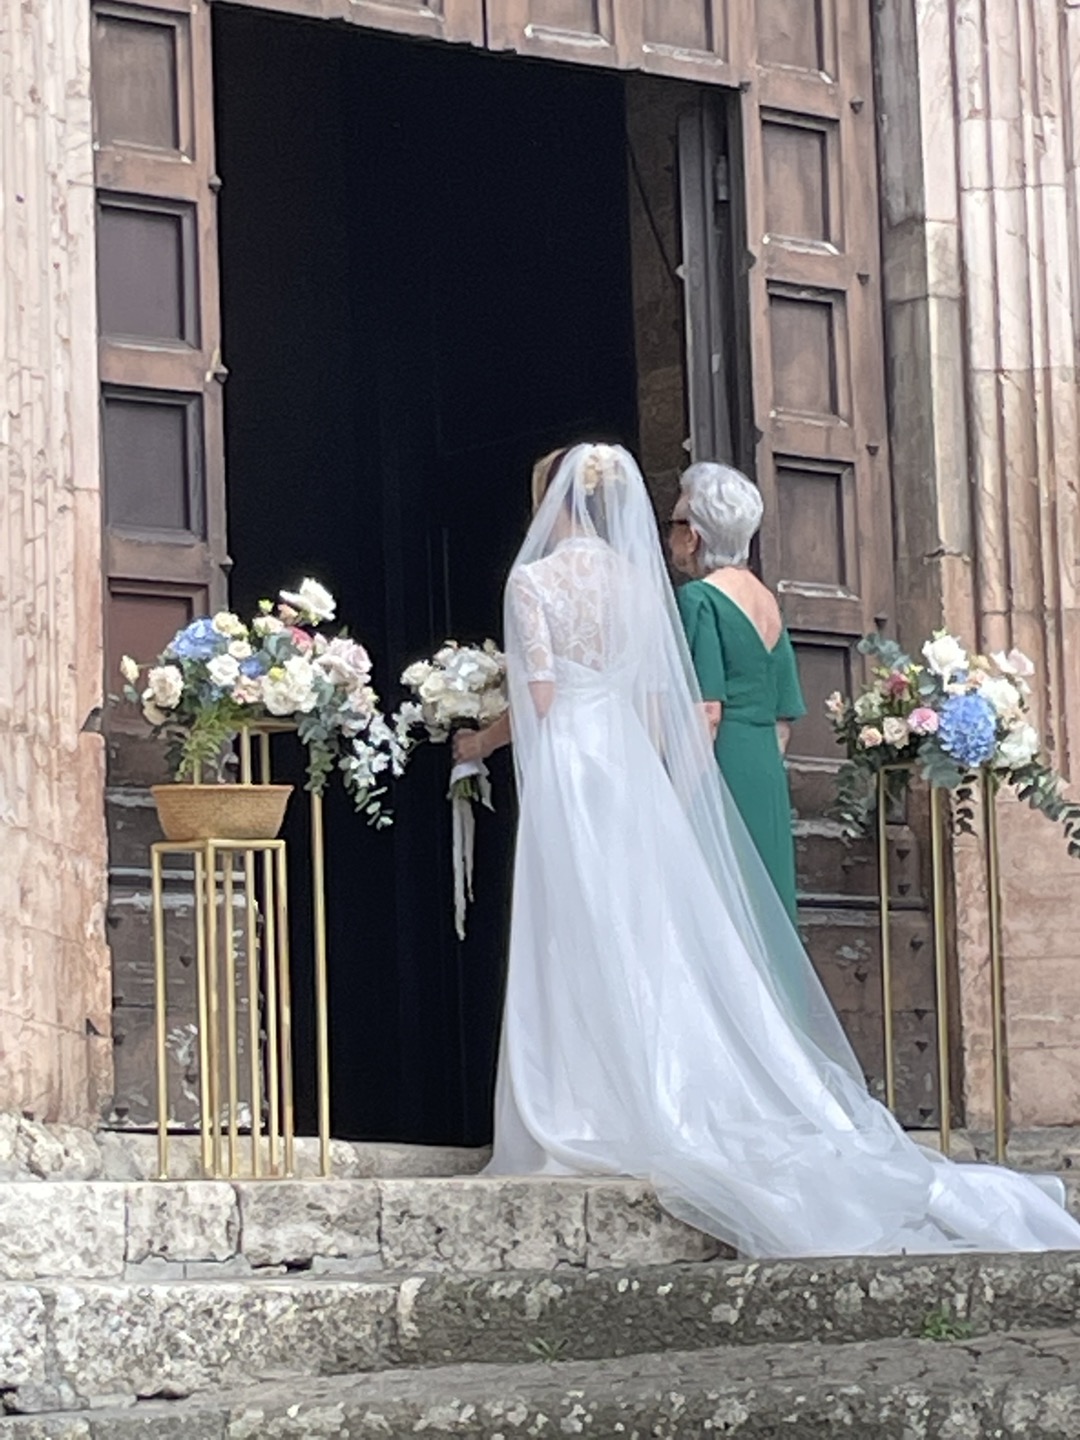 < 오르비에토에서 우연히 보게 된 결혼식에서 신부와 신부의 어머니가 입장을 준비하고 있다 - 출처: 통신원 촬영 >